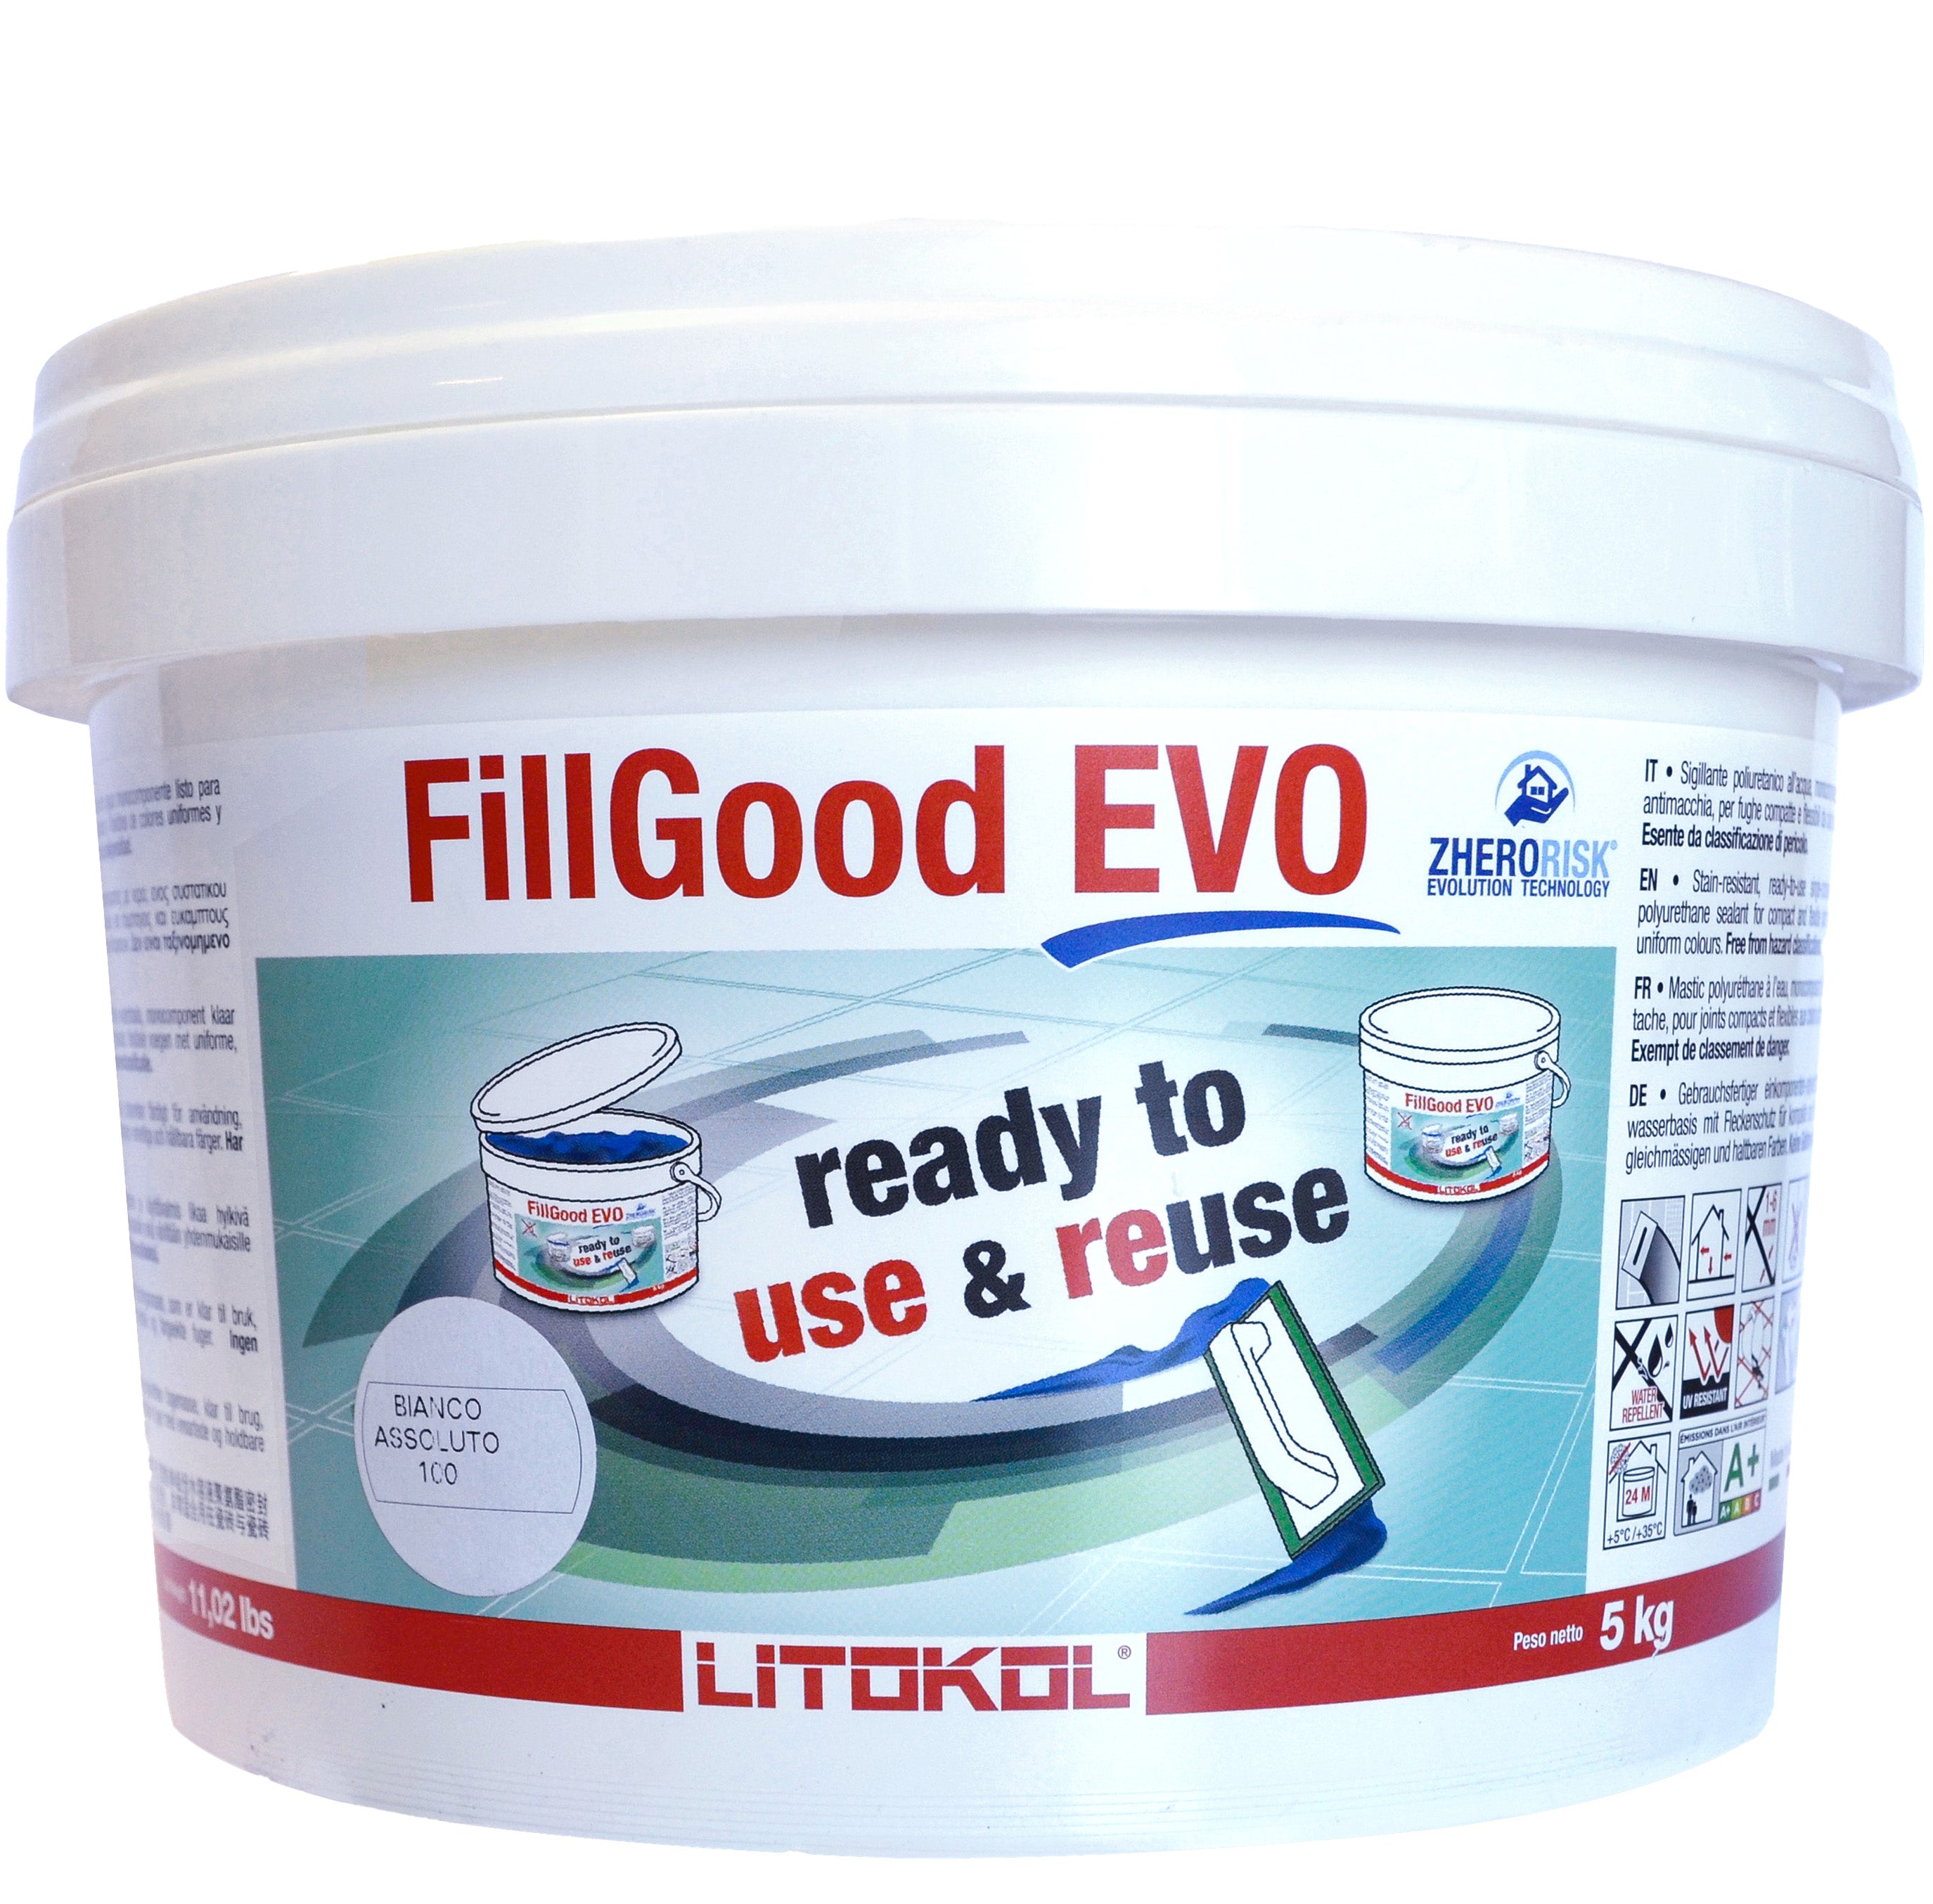 FillGood Evo gebrauchsfertiger 1k Fugenmörtel für Außen und Innen, Bodenheizung, ready to use, Litokol, hier im Tiamont Shop kaufen, bestellen, Beratung, schneller Versand, beste, qualität, gut, super